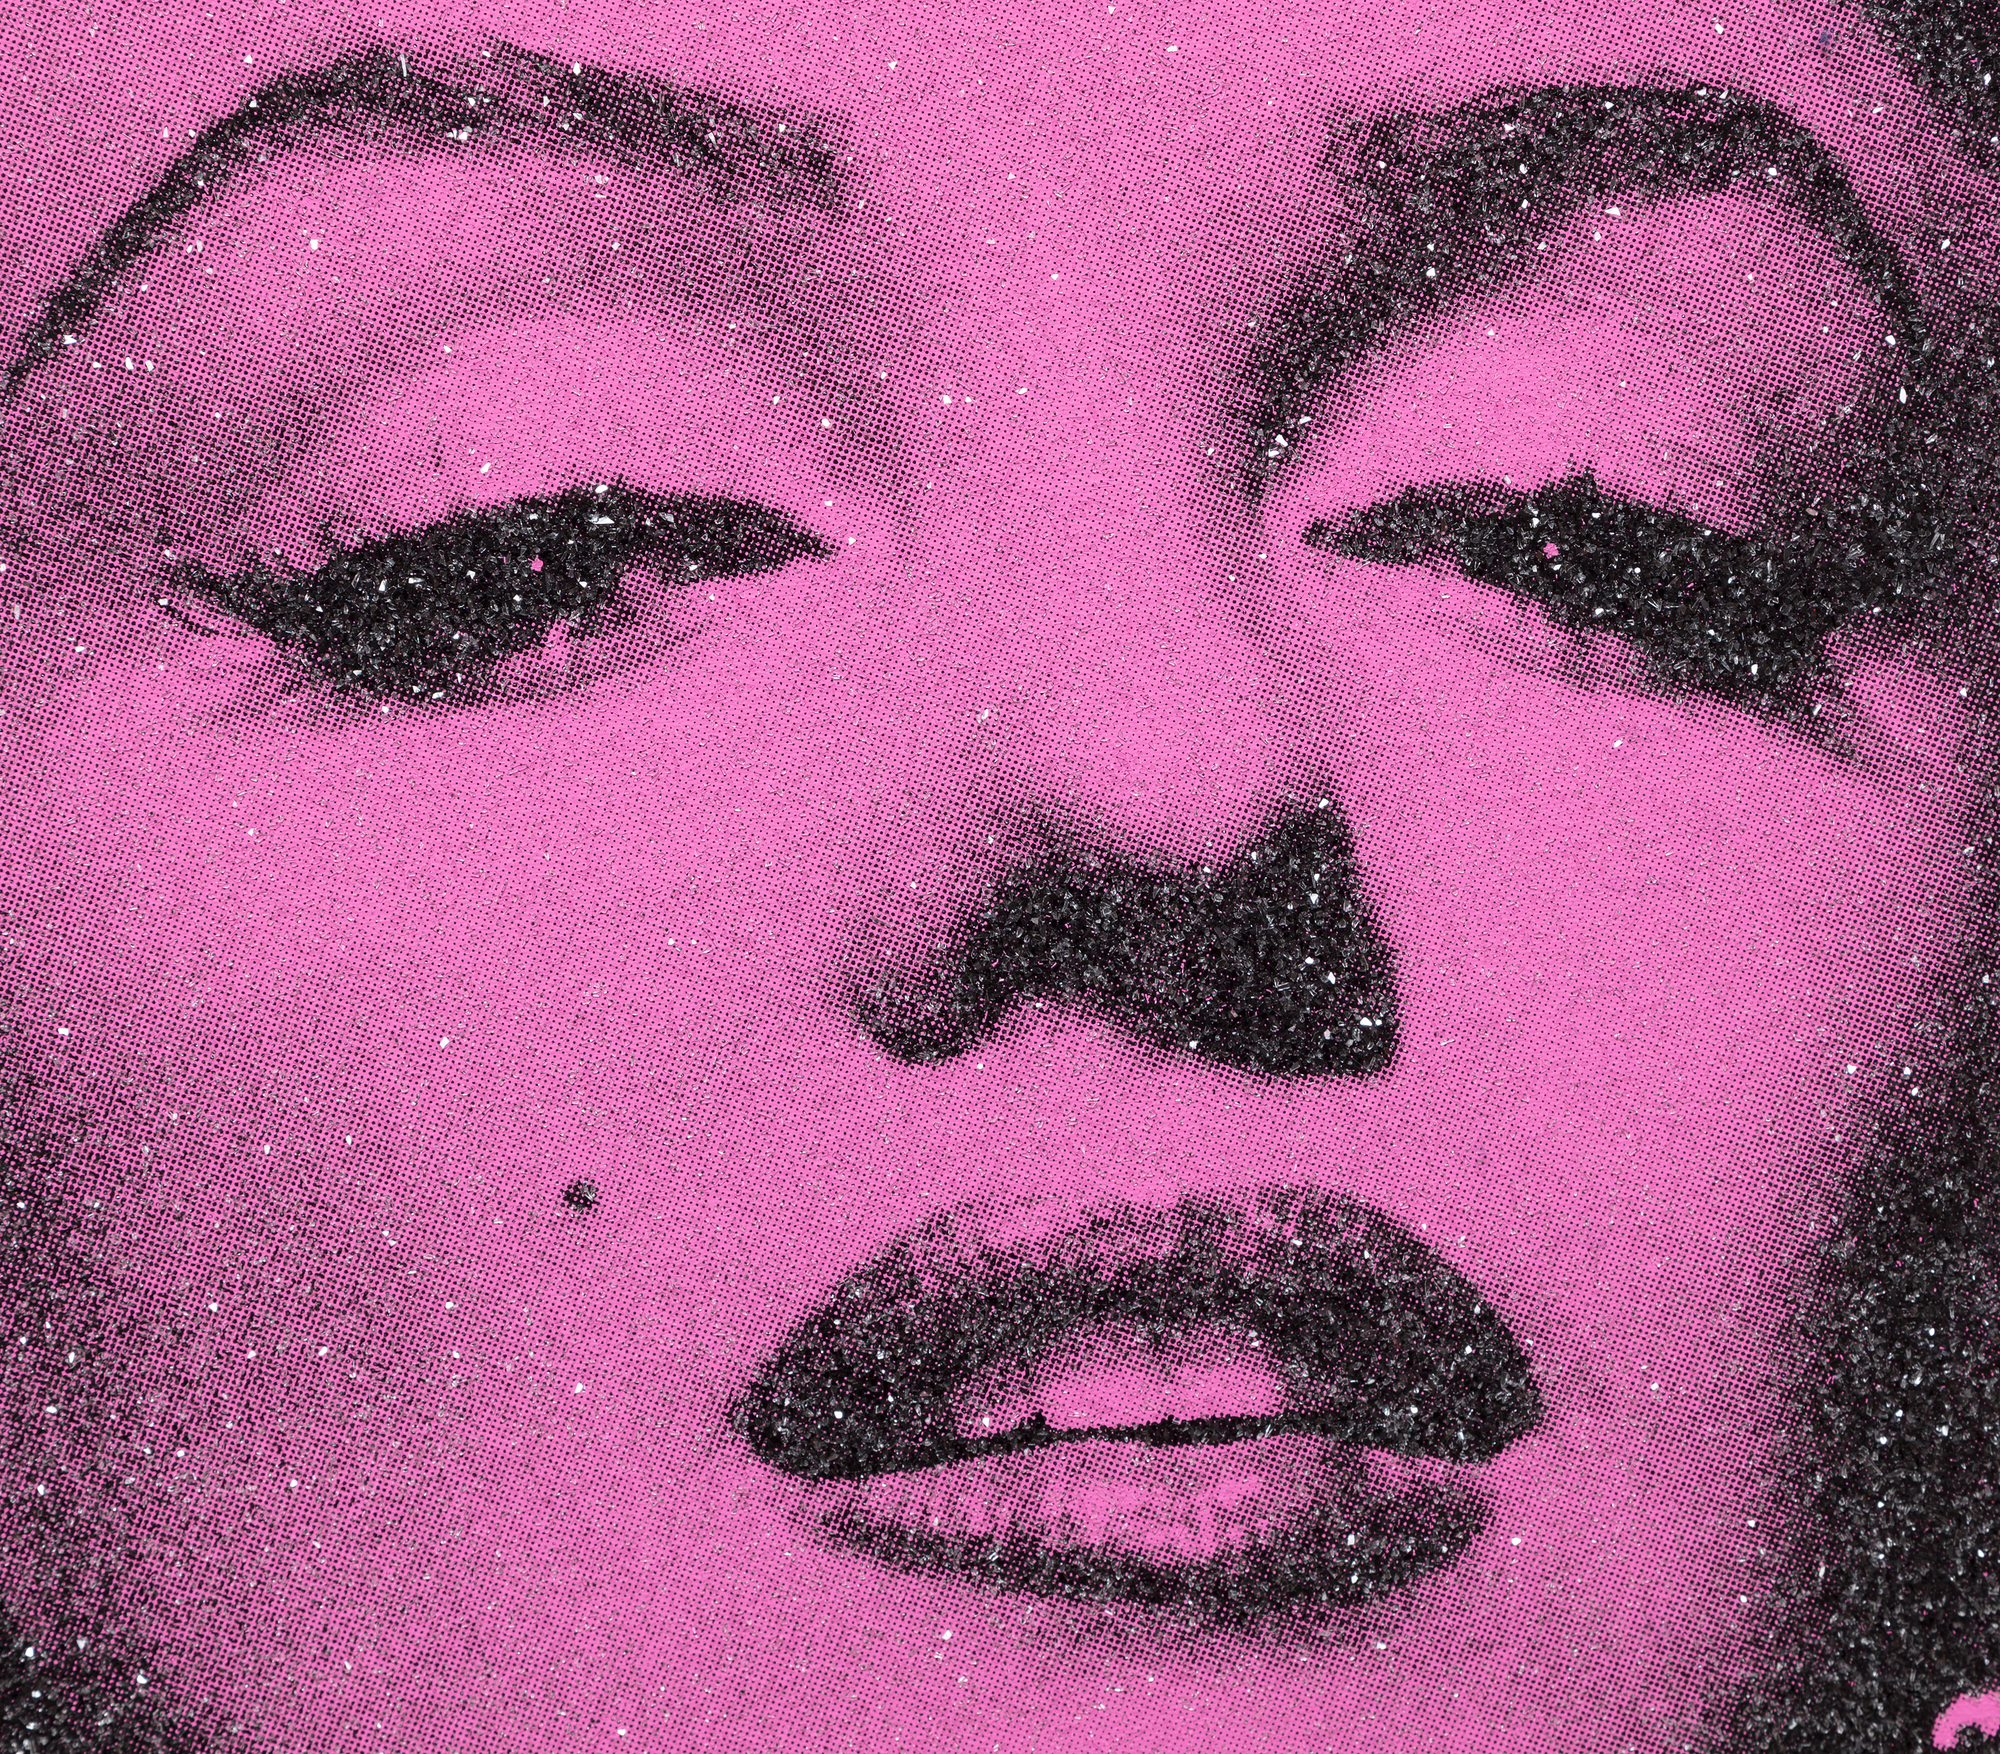 RUSSELL YOUNG - Marilyn Portrait - スクリーンプリント、リネン、ダイヤモンドダスト - 35 3/4 x 27 3/4 in.